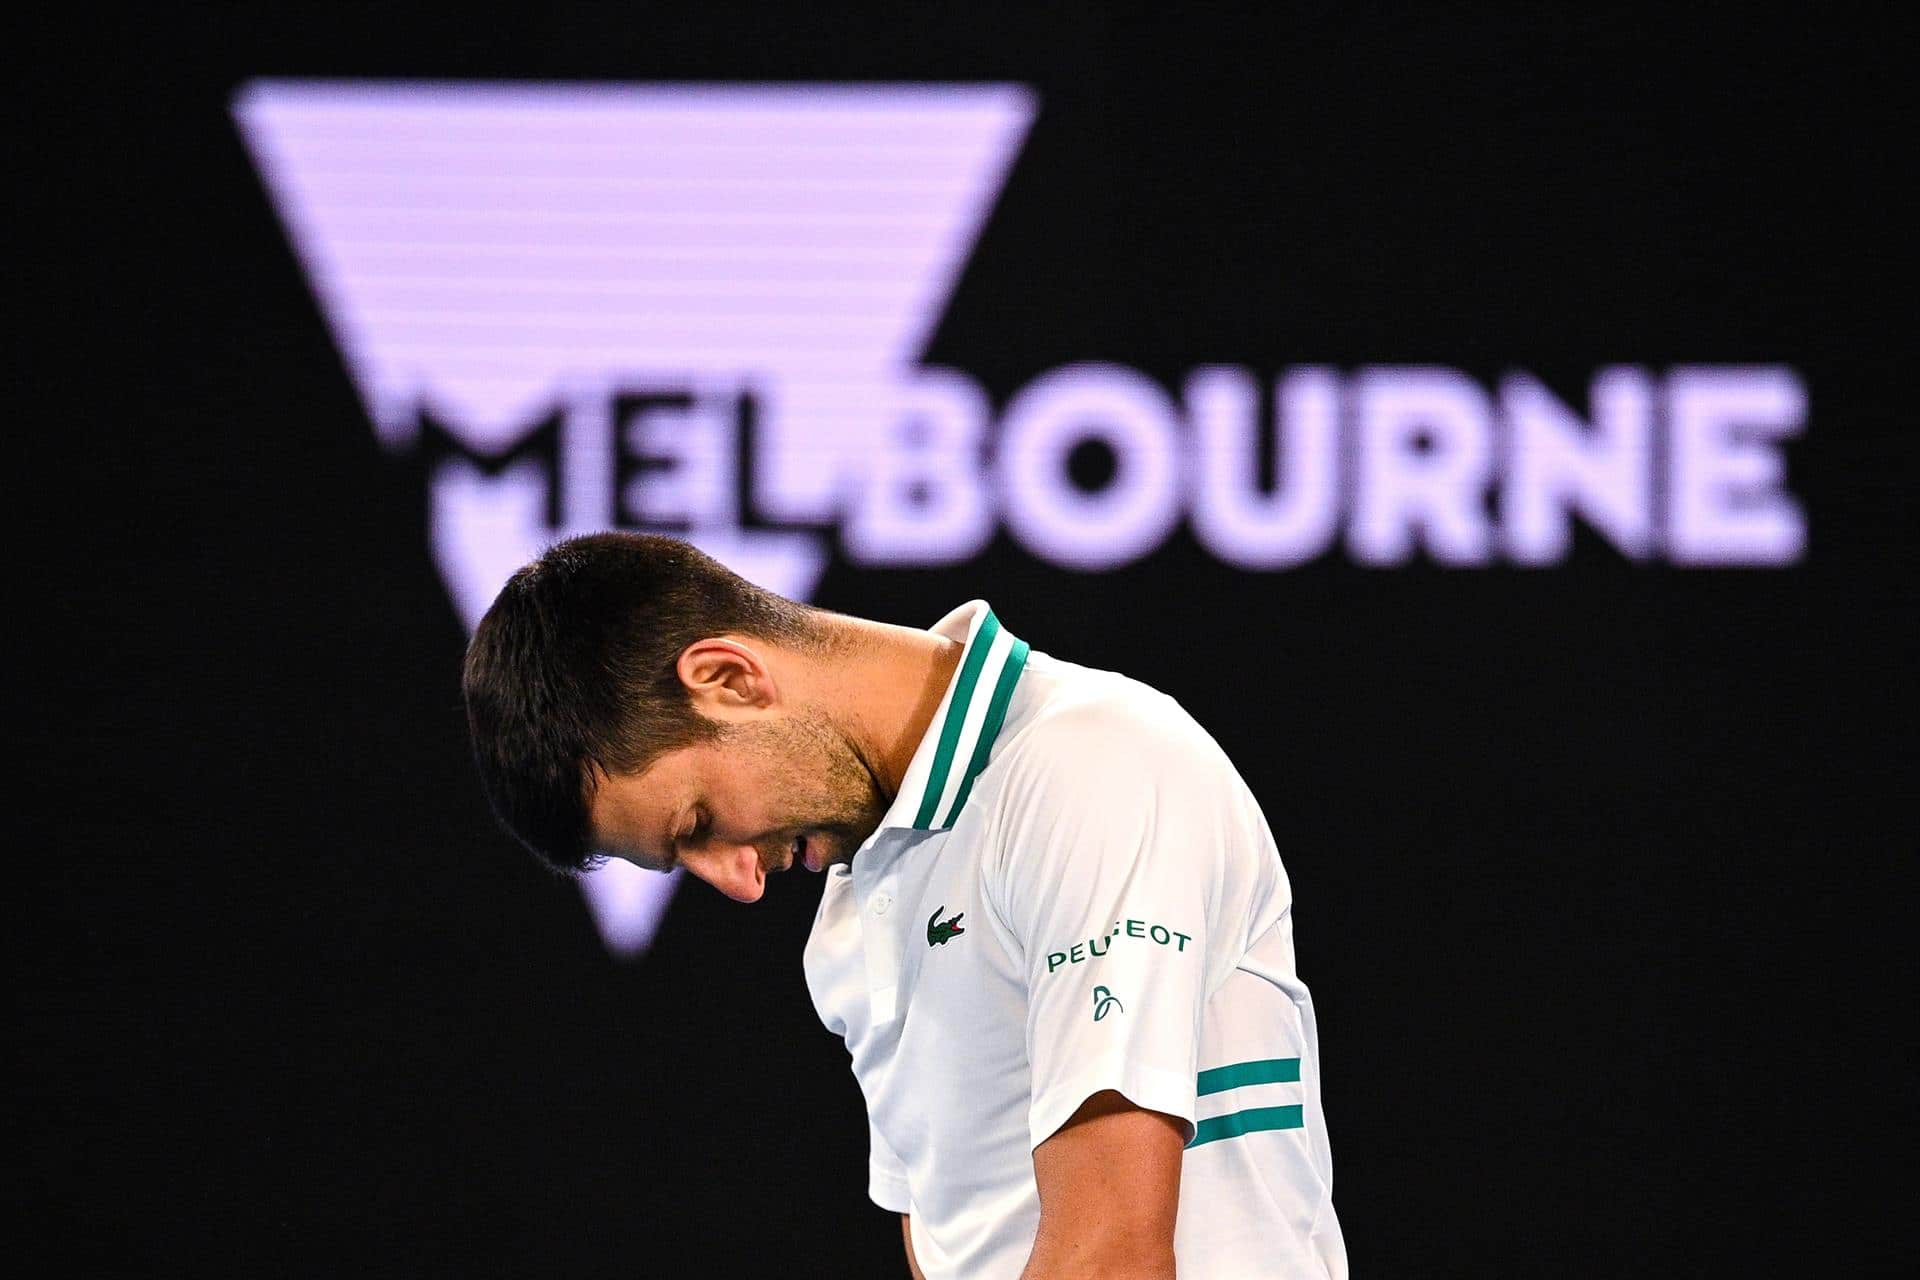 Djokovic, profundamente decepcionado por decisión de expulsarlo de Australia, dice respetar veredicto